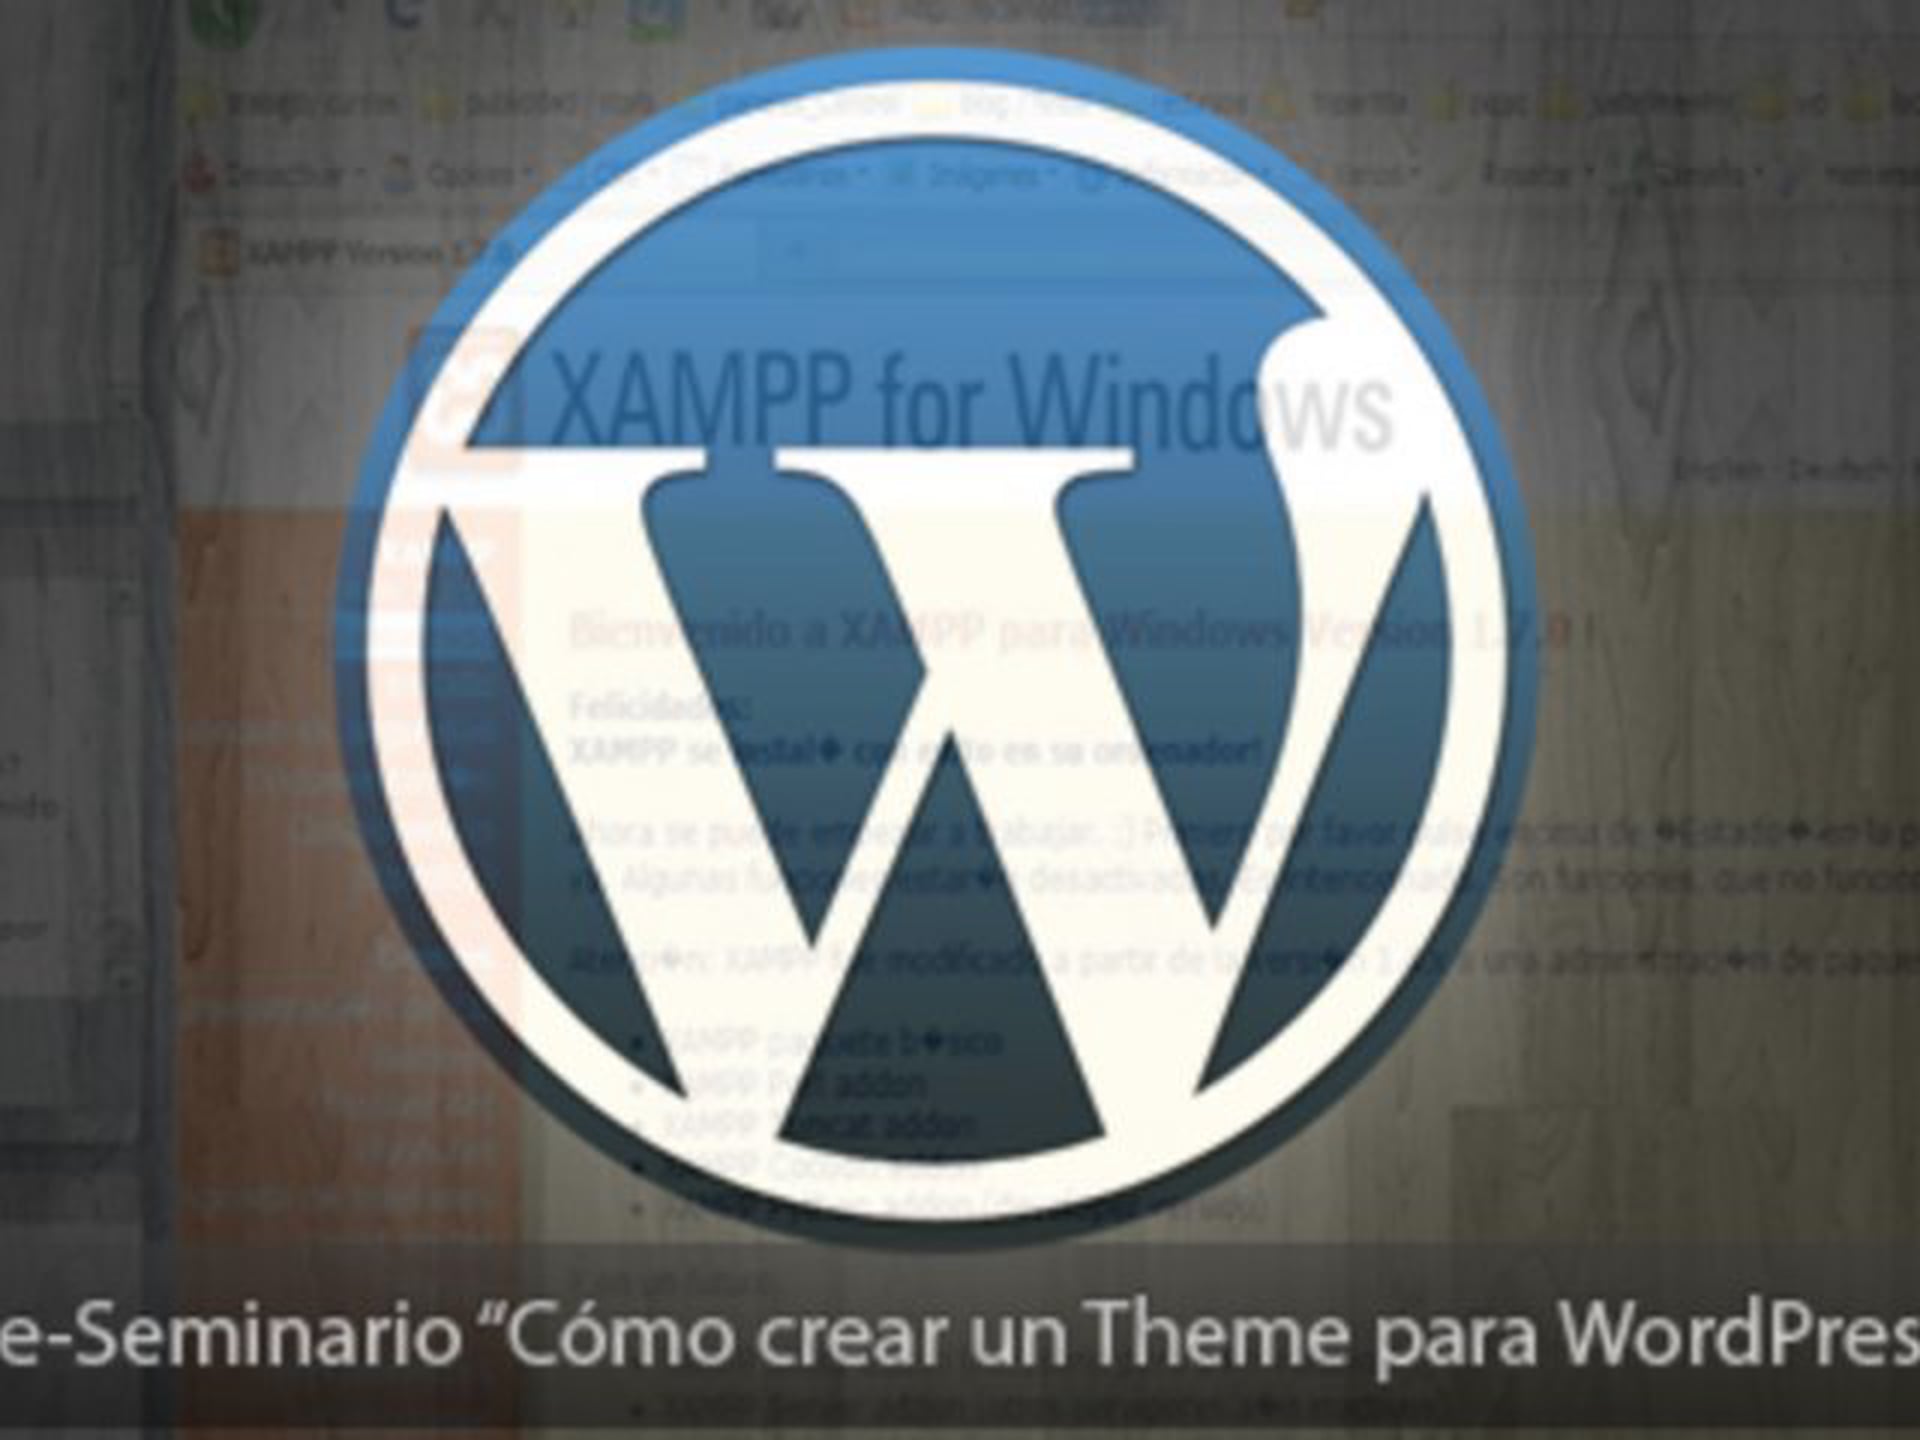 Cómo crear un theme para WordPress (2ª parte)